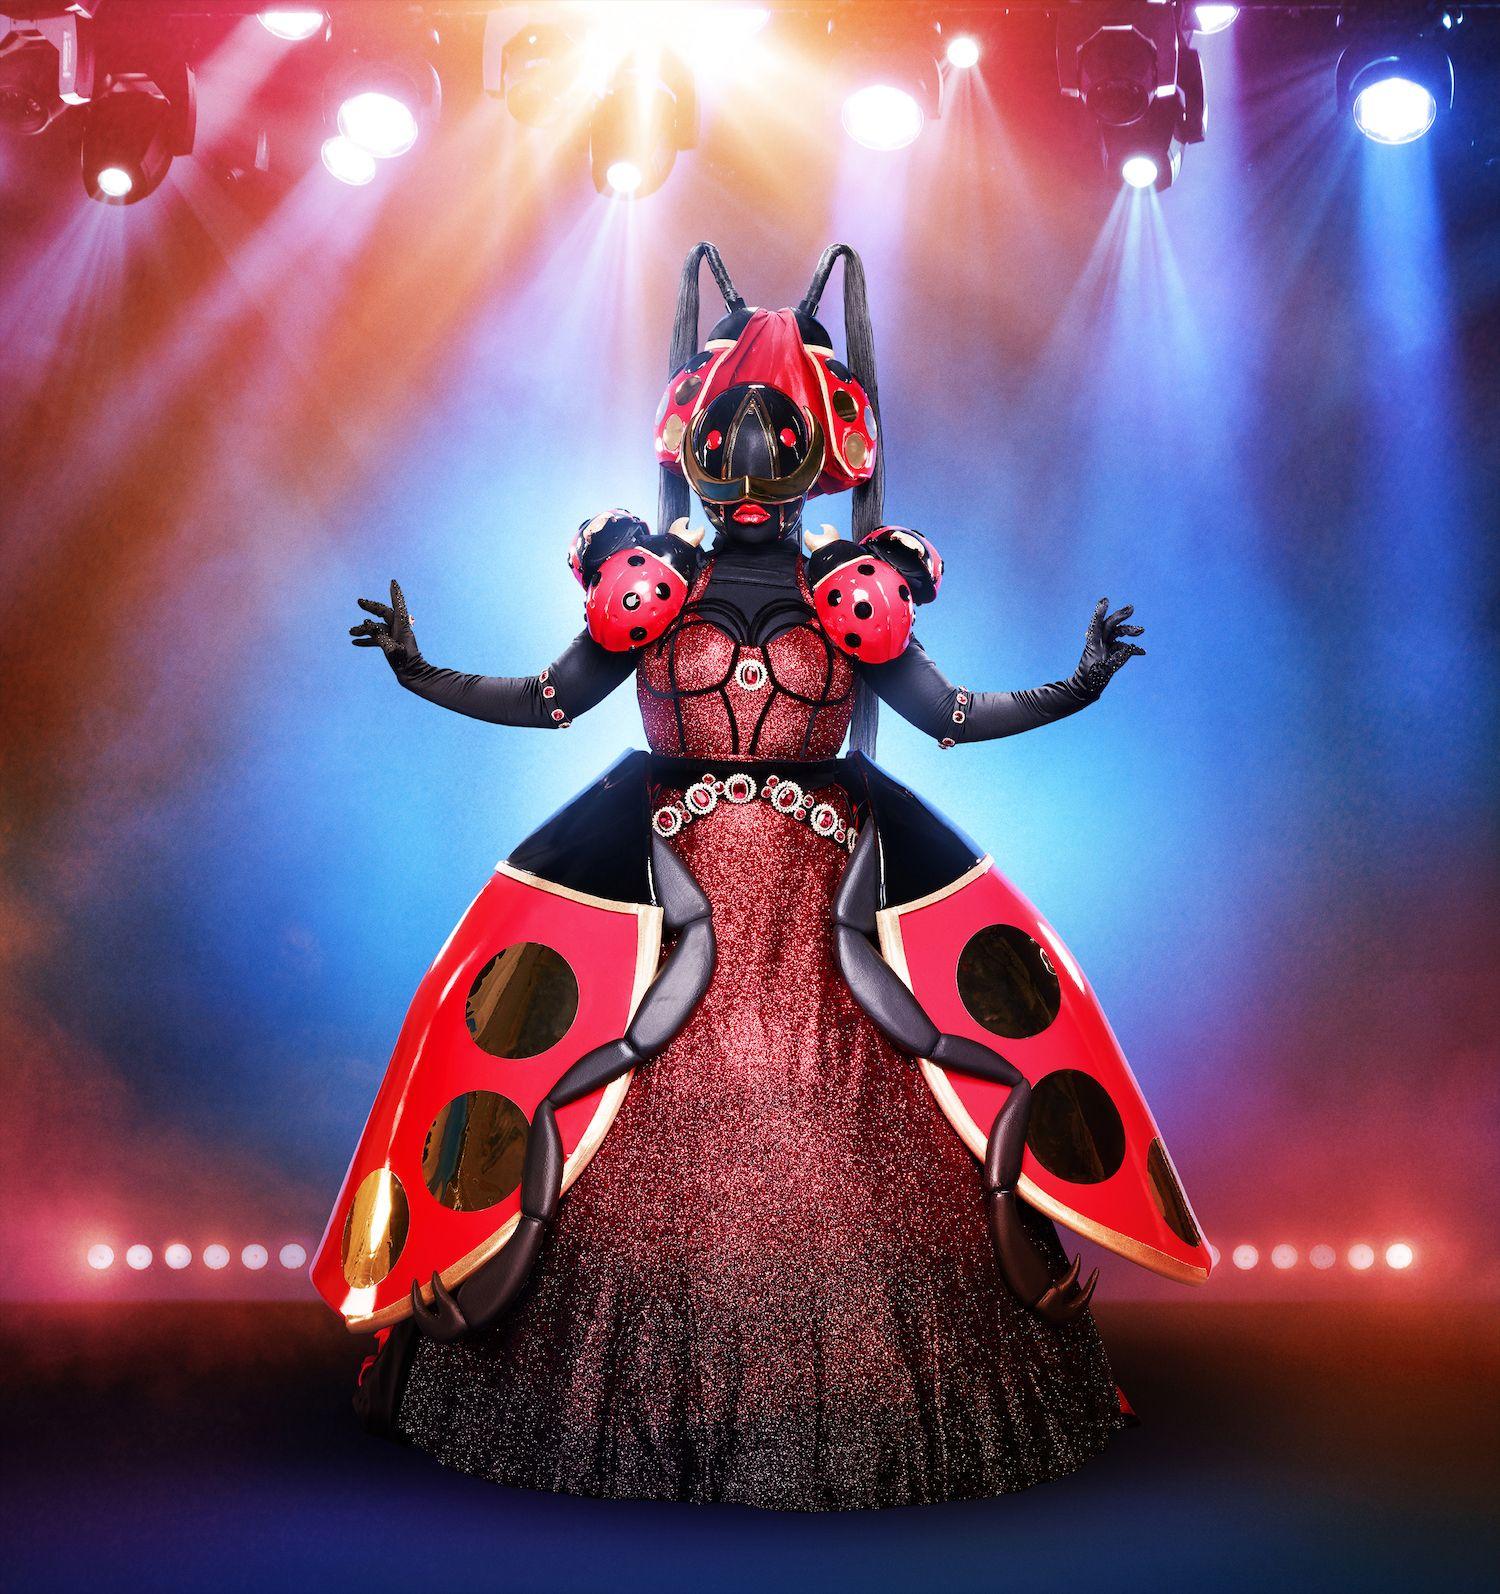 Who Is the Ladybug on 'The Masked Singer'? Ladybug